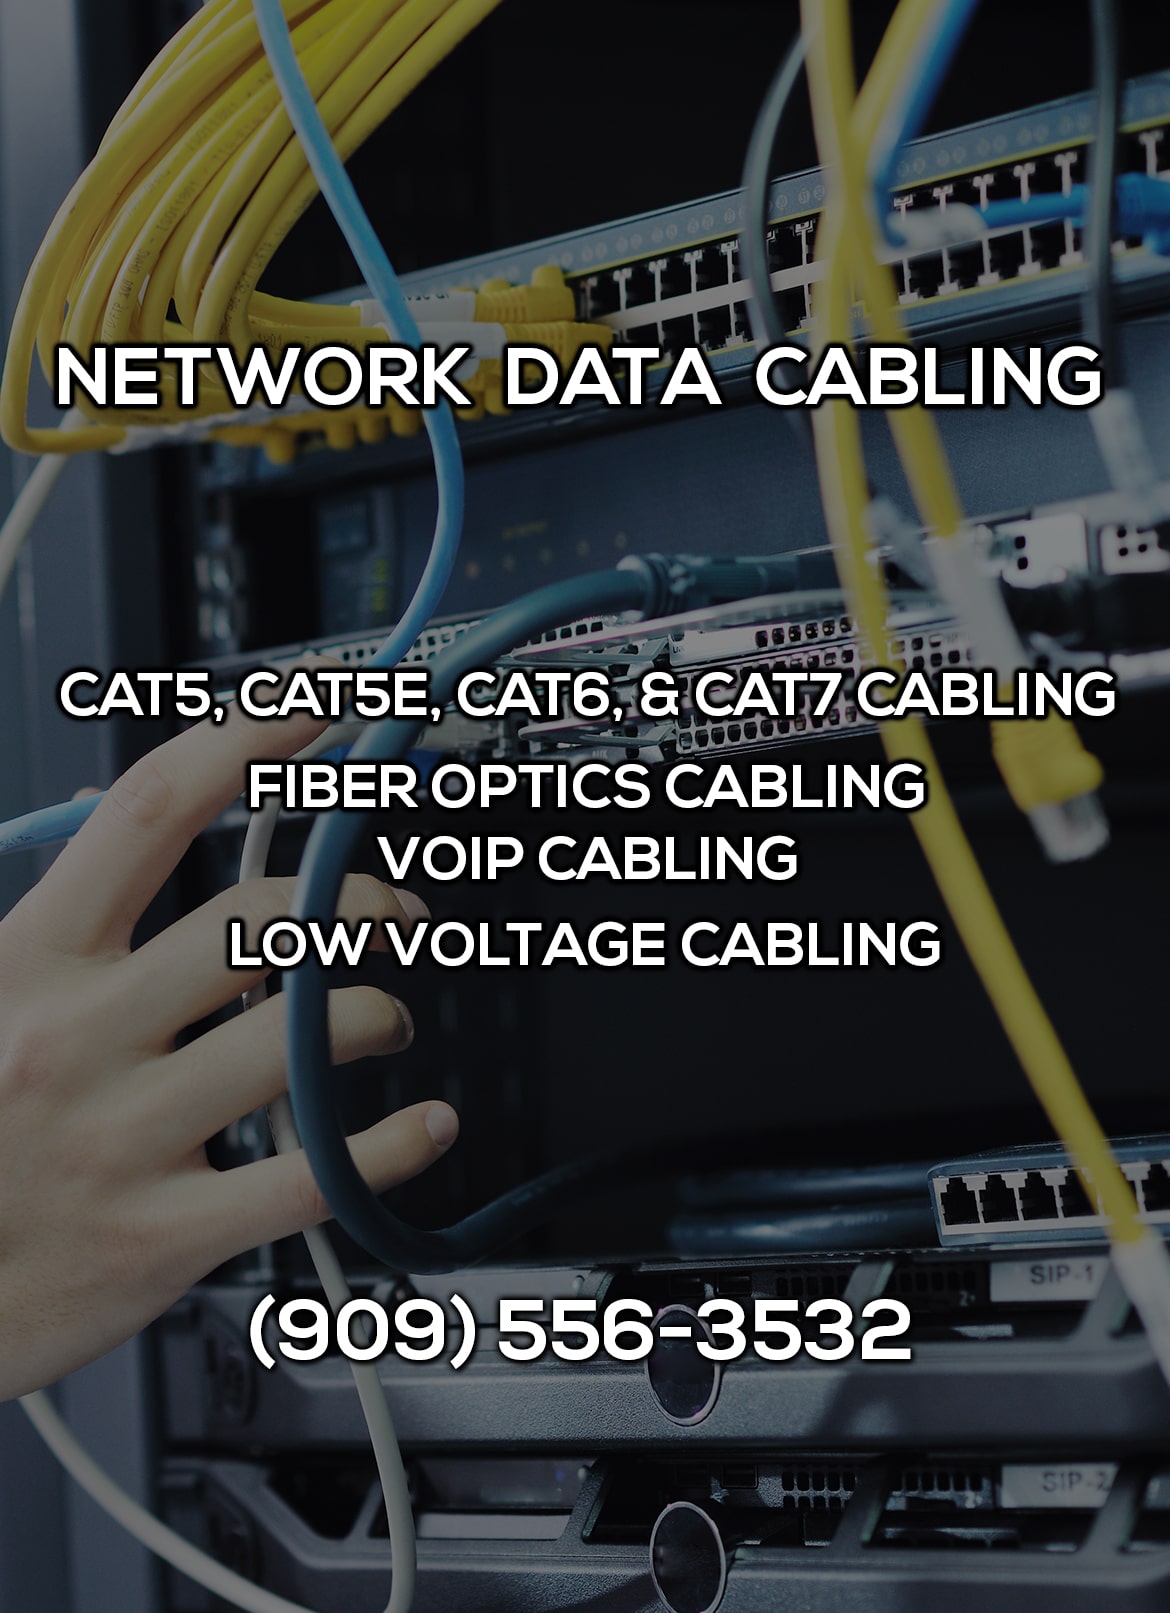 Network Data Cabling in Rialto CA